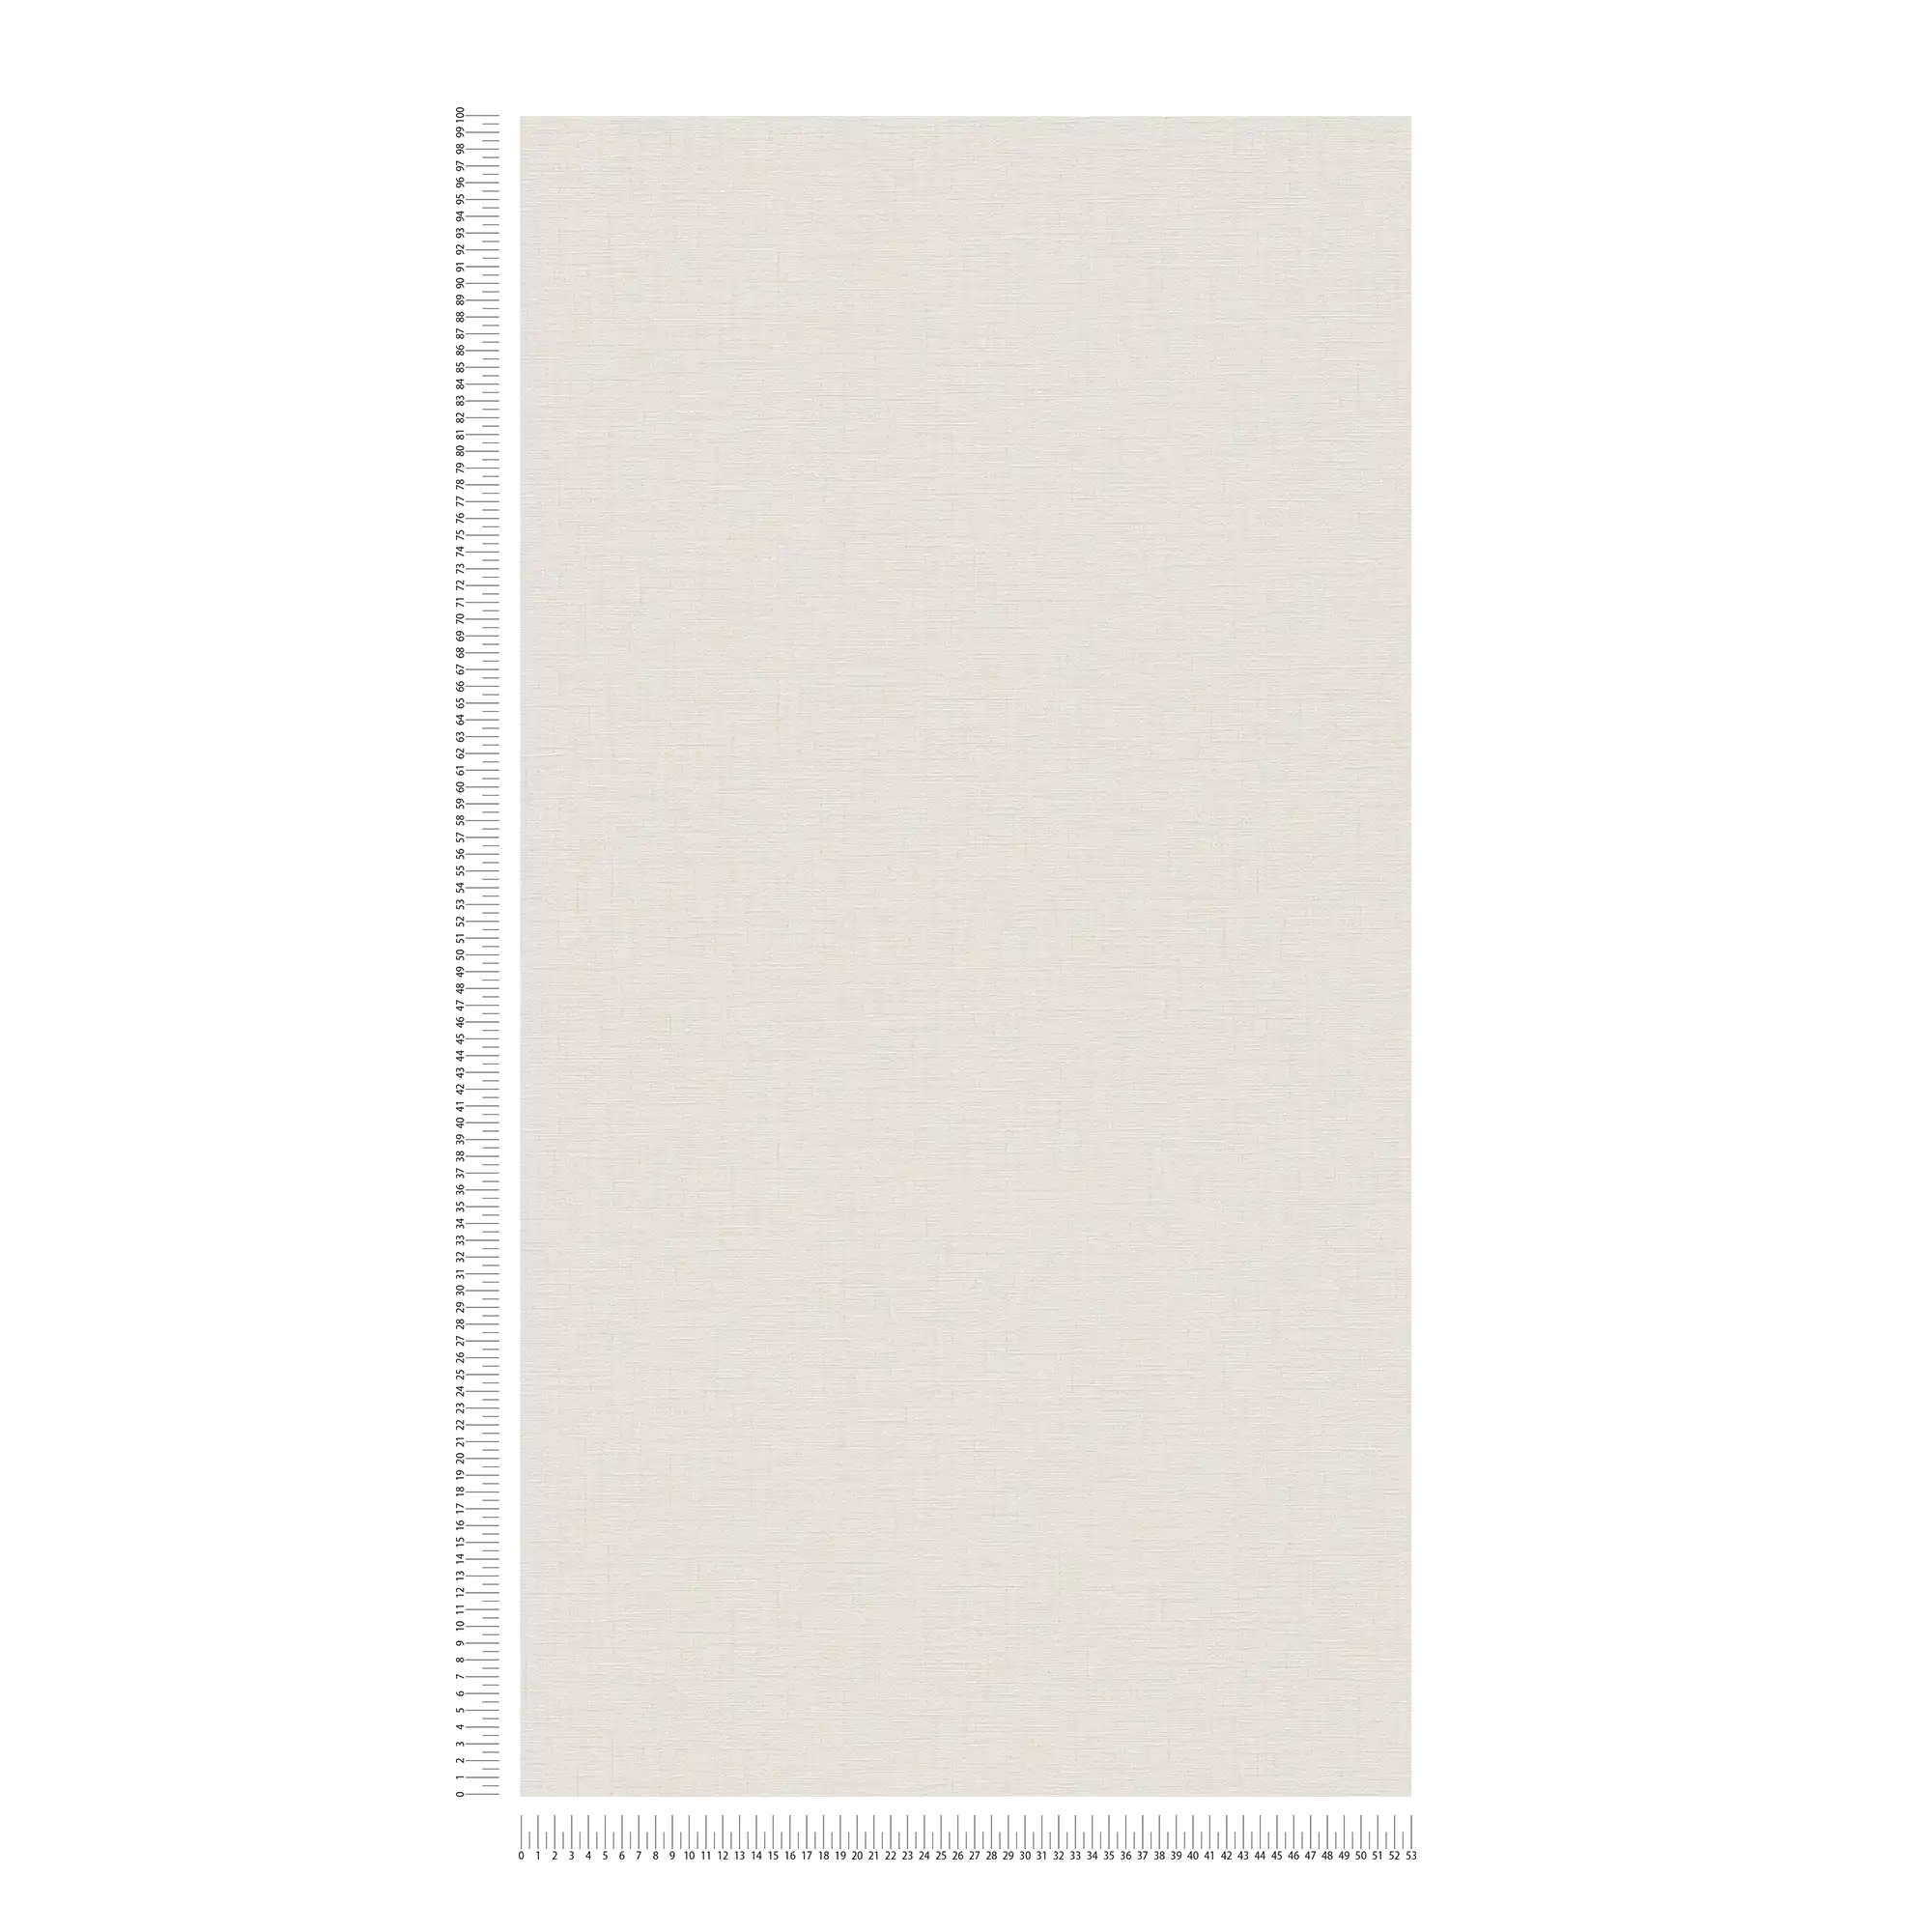             Papier peint uni gris clair avec structure en lin, chiné - gris
        